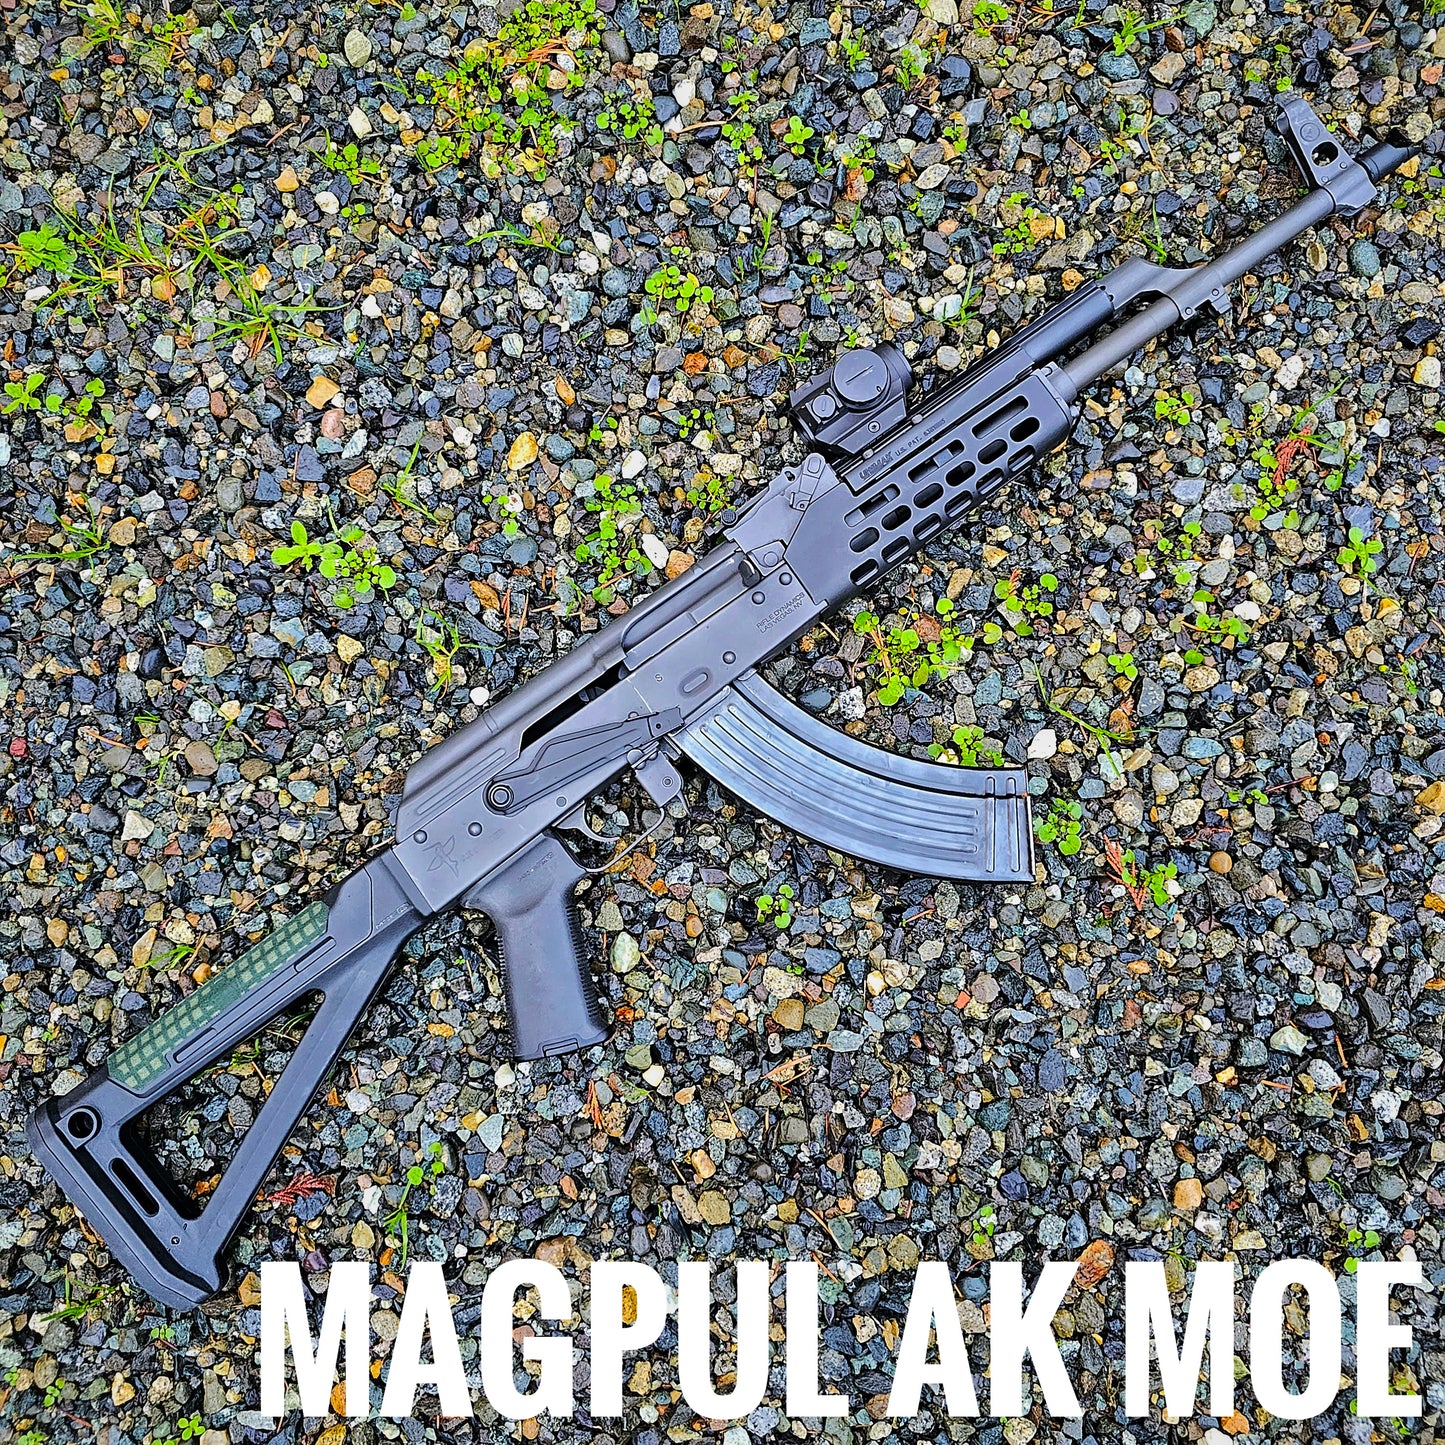 Magpul AK MOE stock